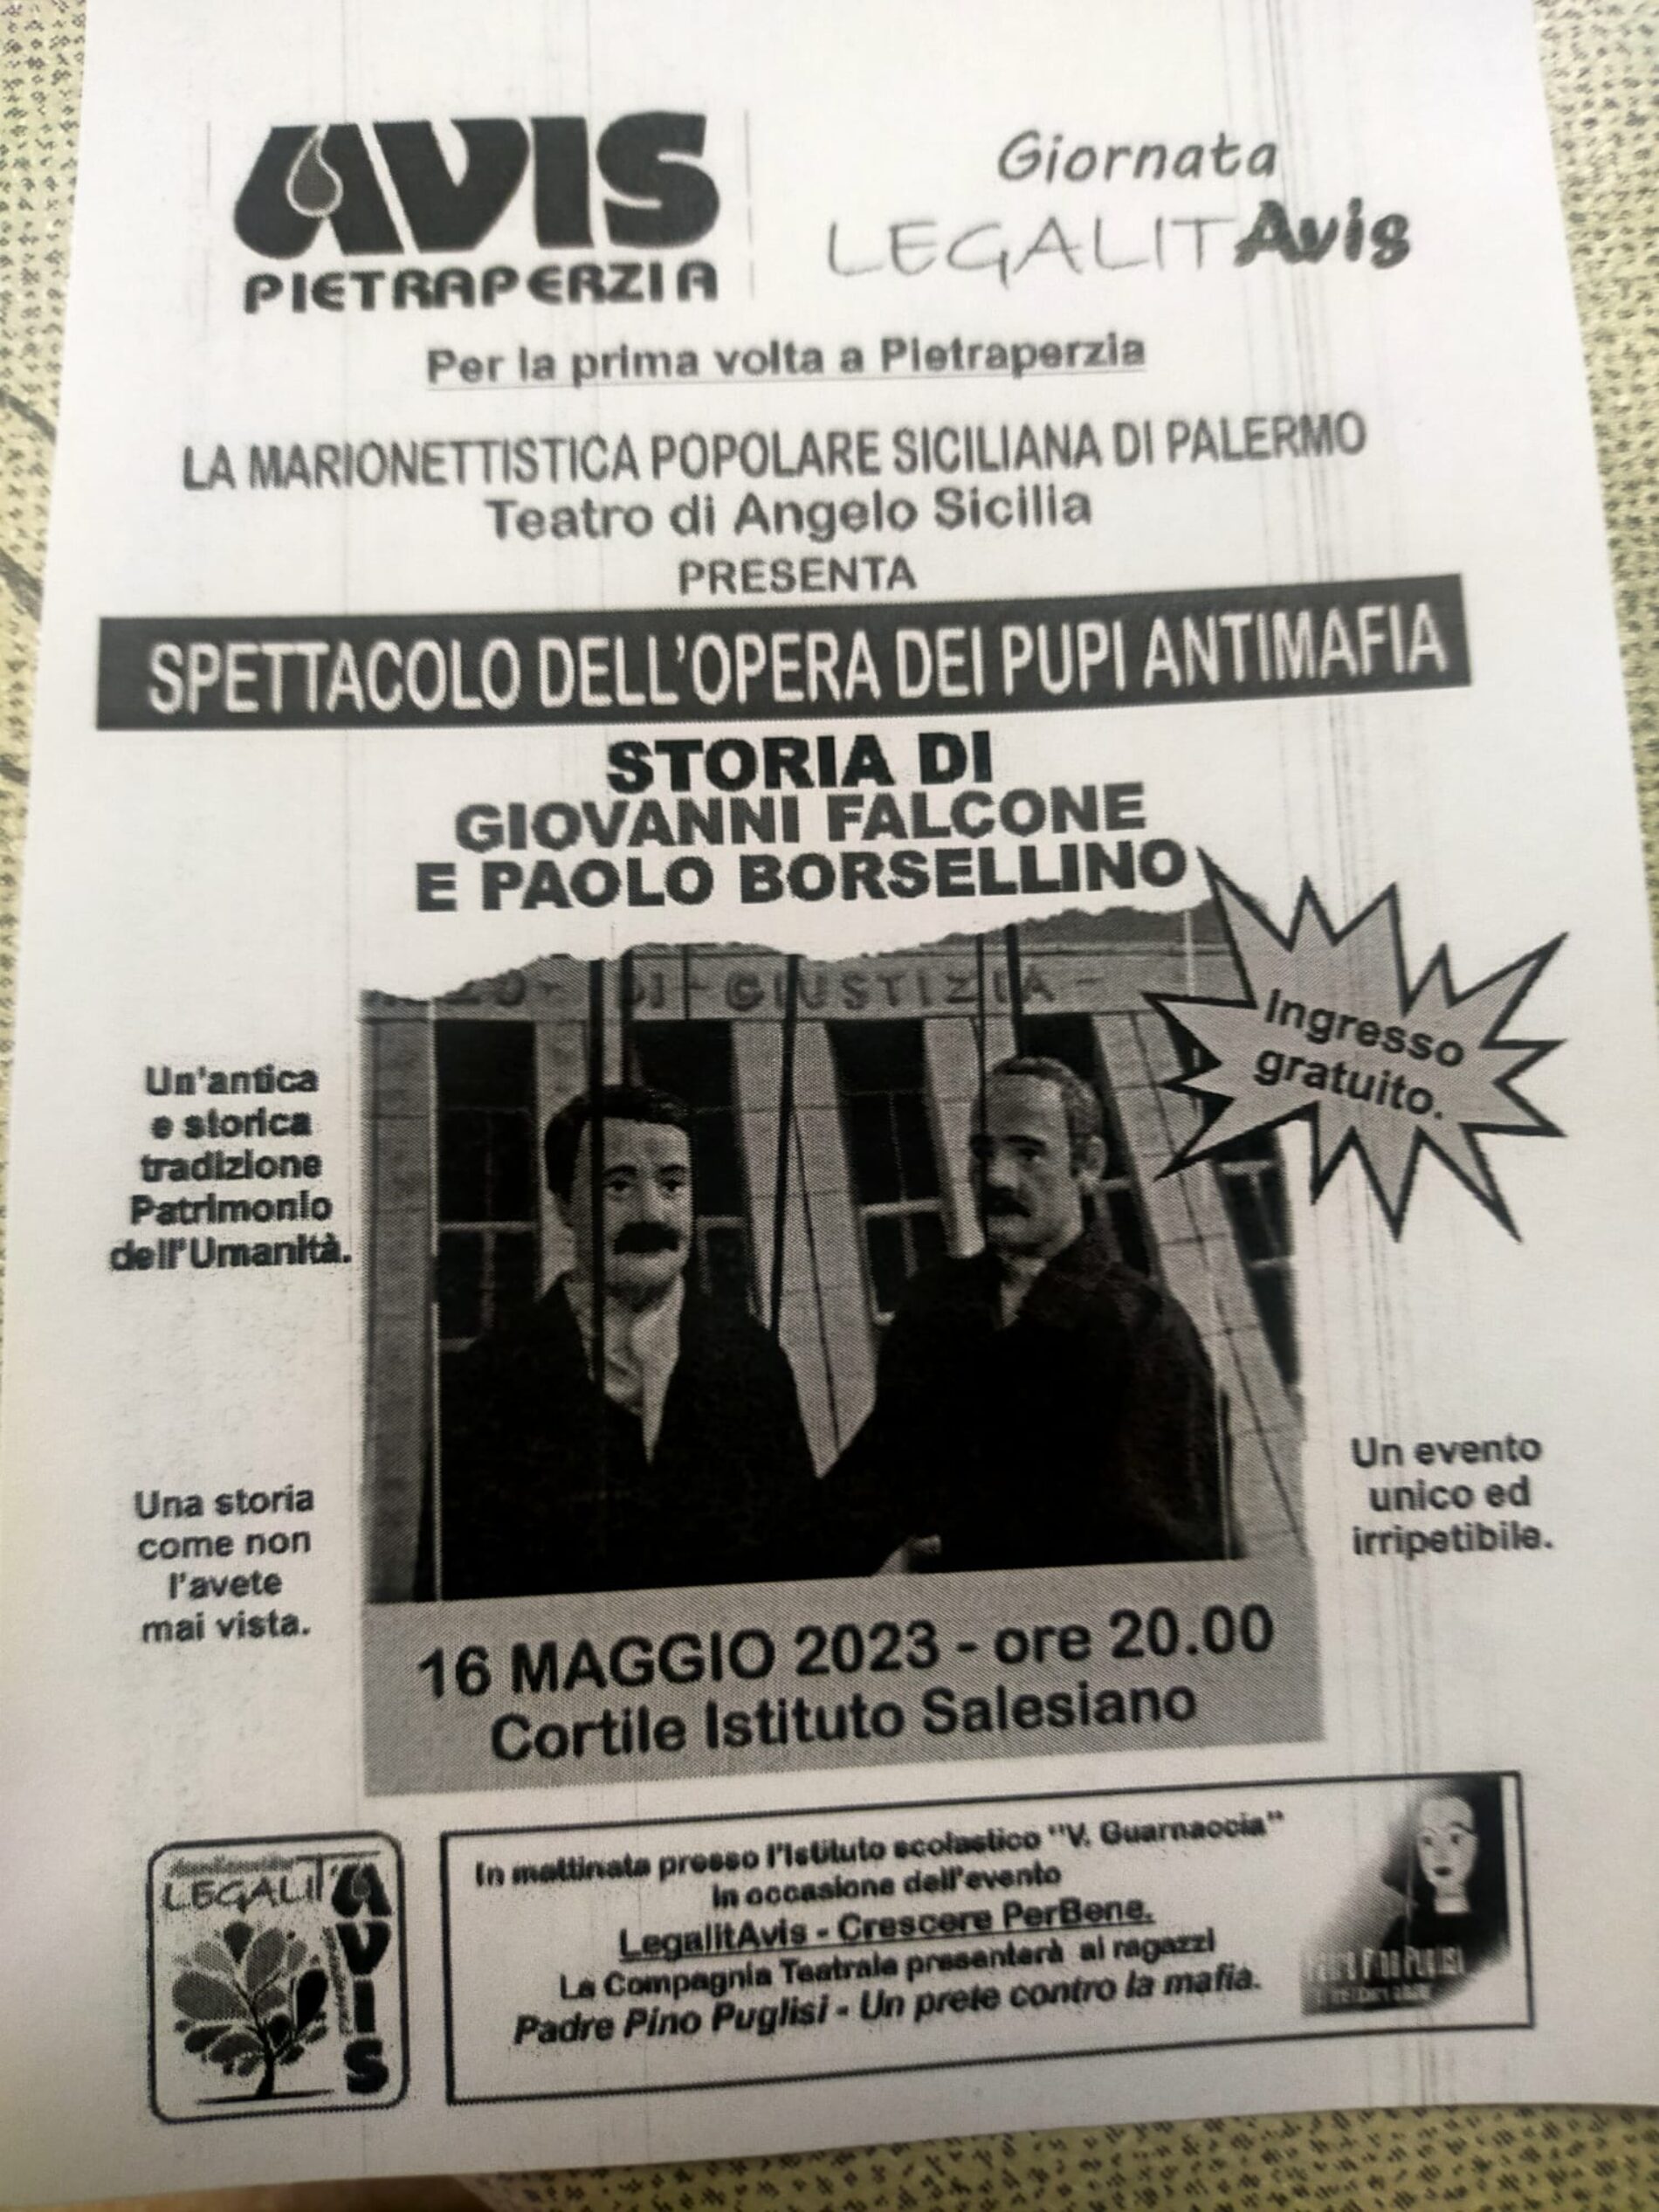 PIETRAPERZIA. “Spettacolo dell’Opera dei Pupi Antimafia. Storia di Giovanni Falcone e Paolo Borsellino”.